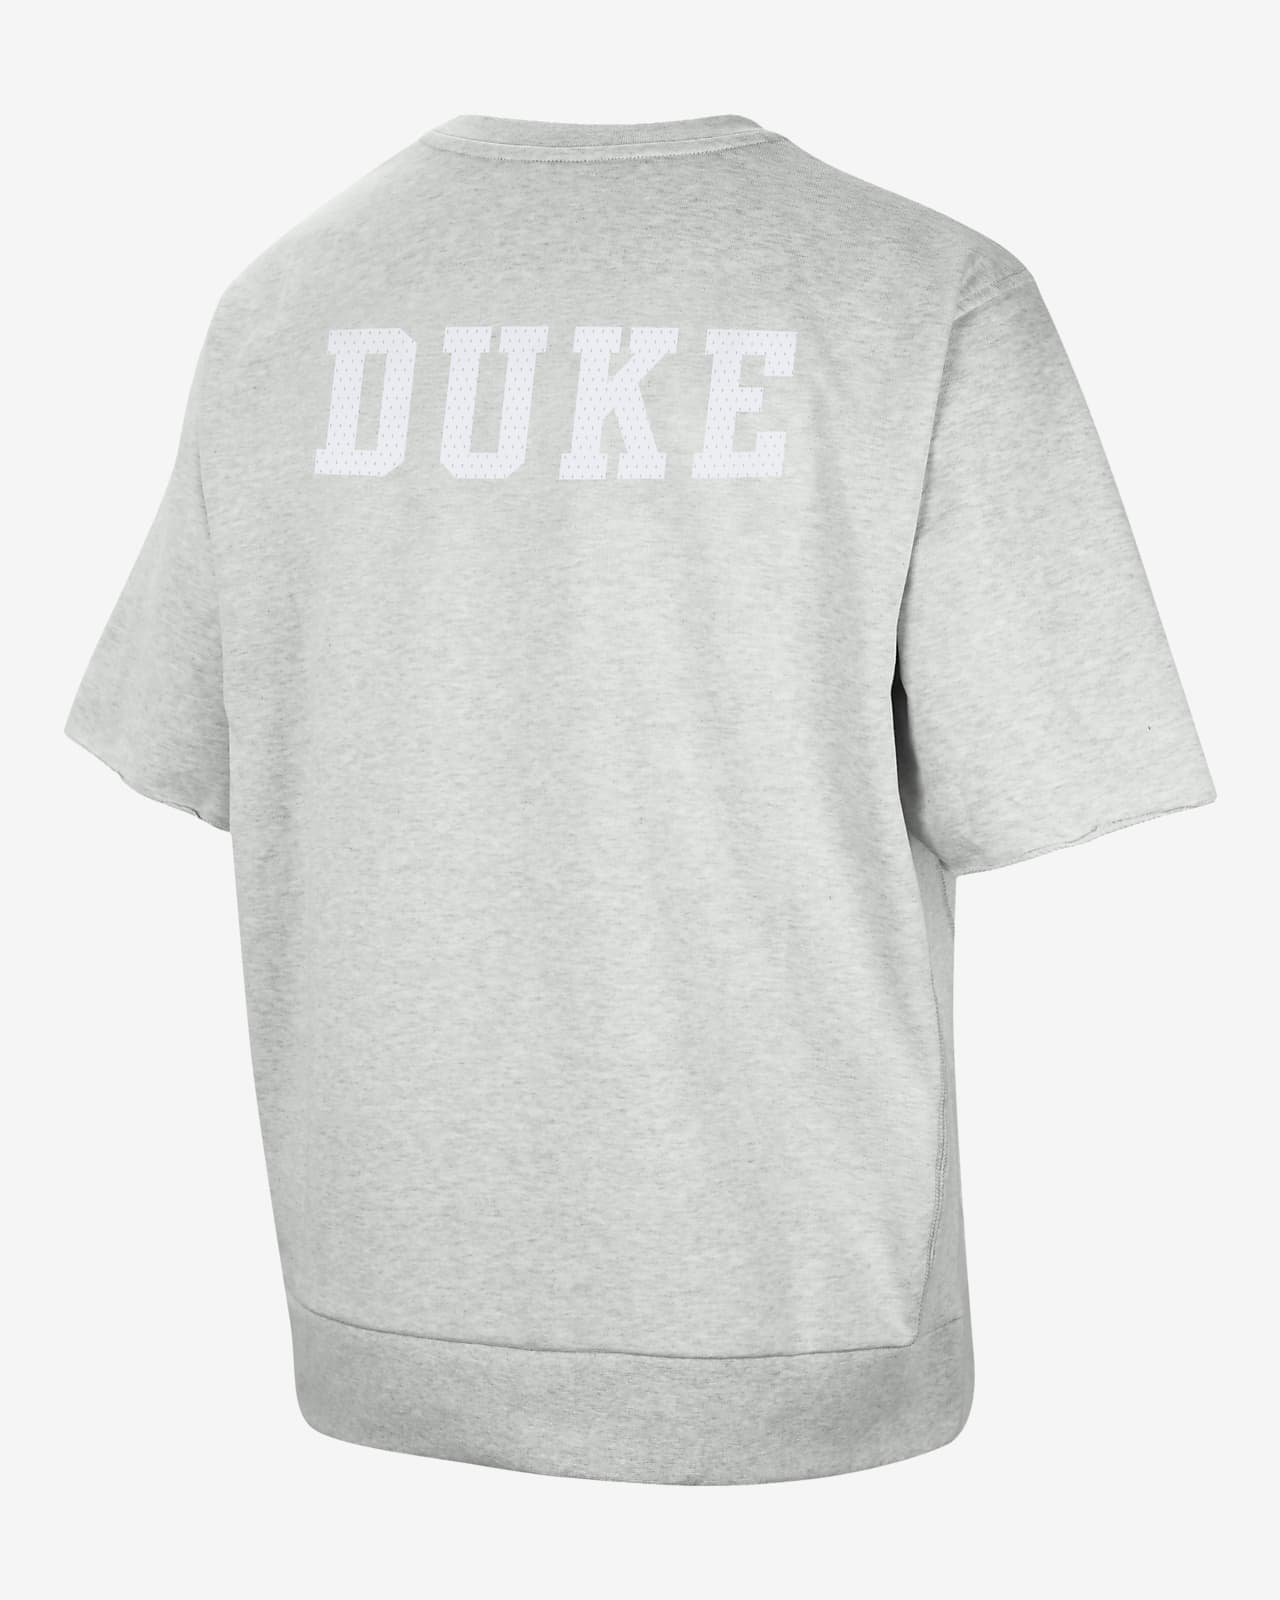 Nike, Shirts, Duke Basketball Jersey Nike 3 Size L